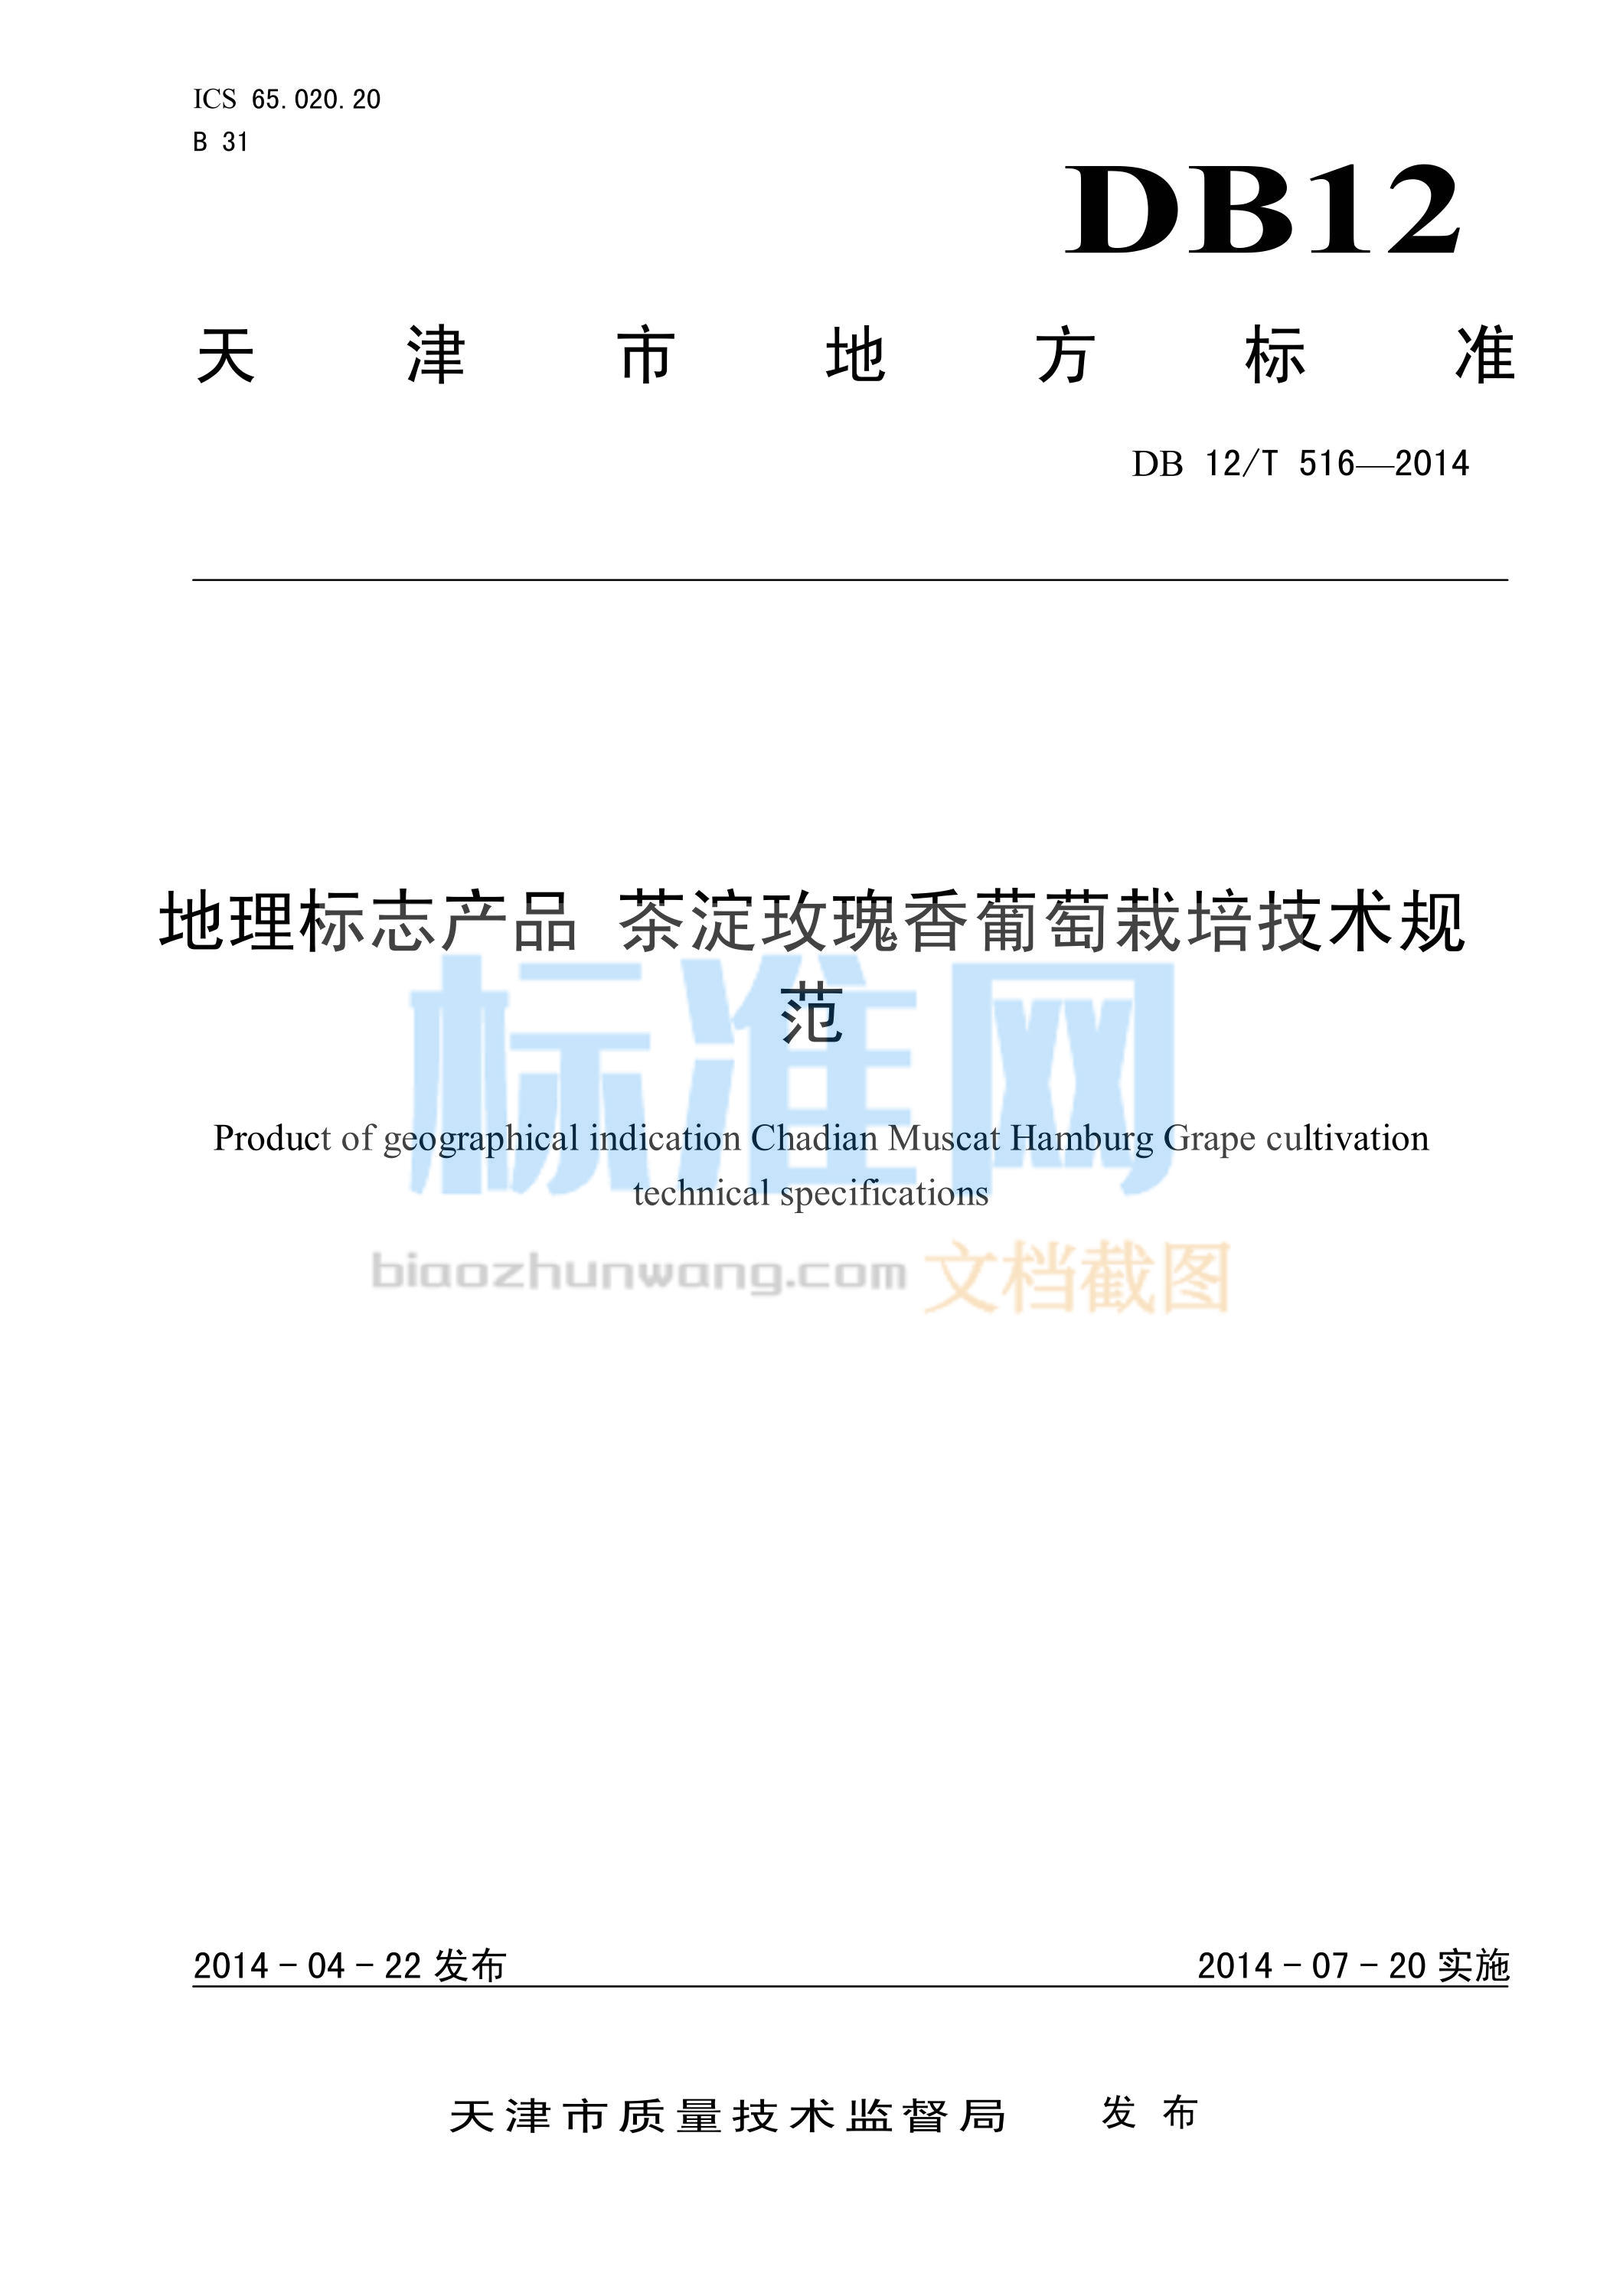 DB12/T 516-2014 地理标志产品 茶淀玫瑰香葡萄栽培技术规范